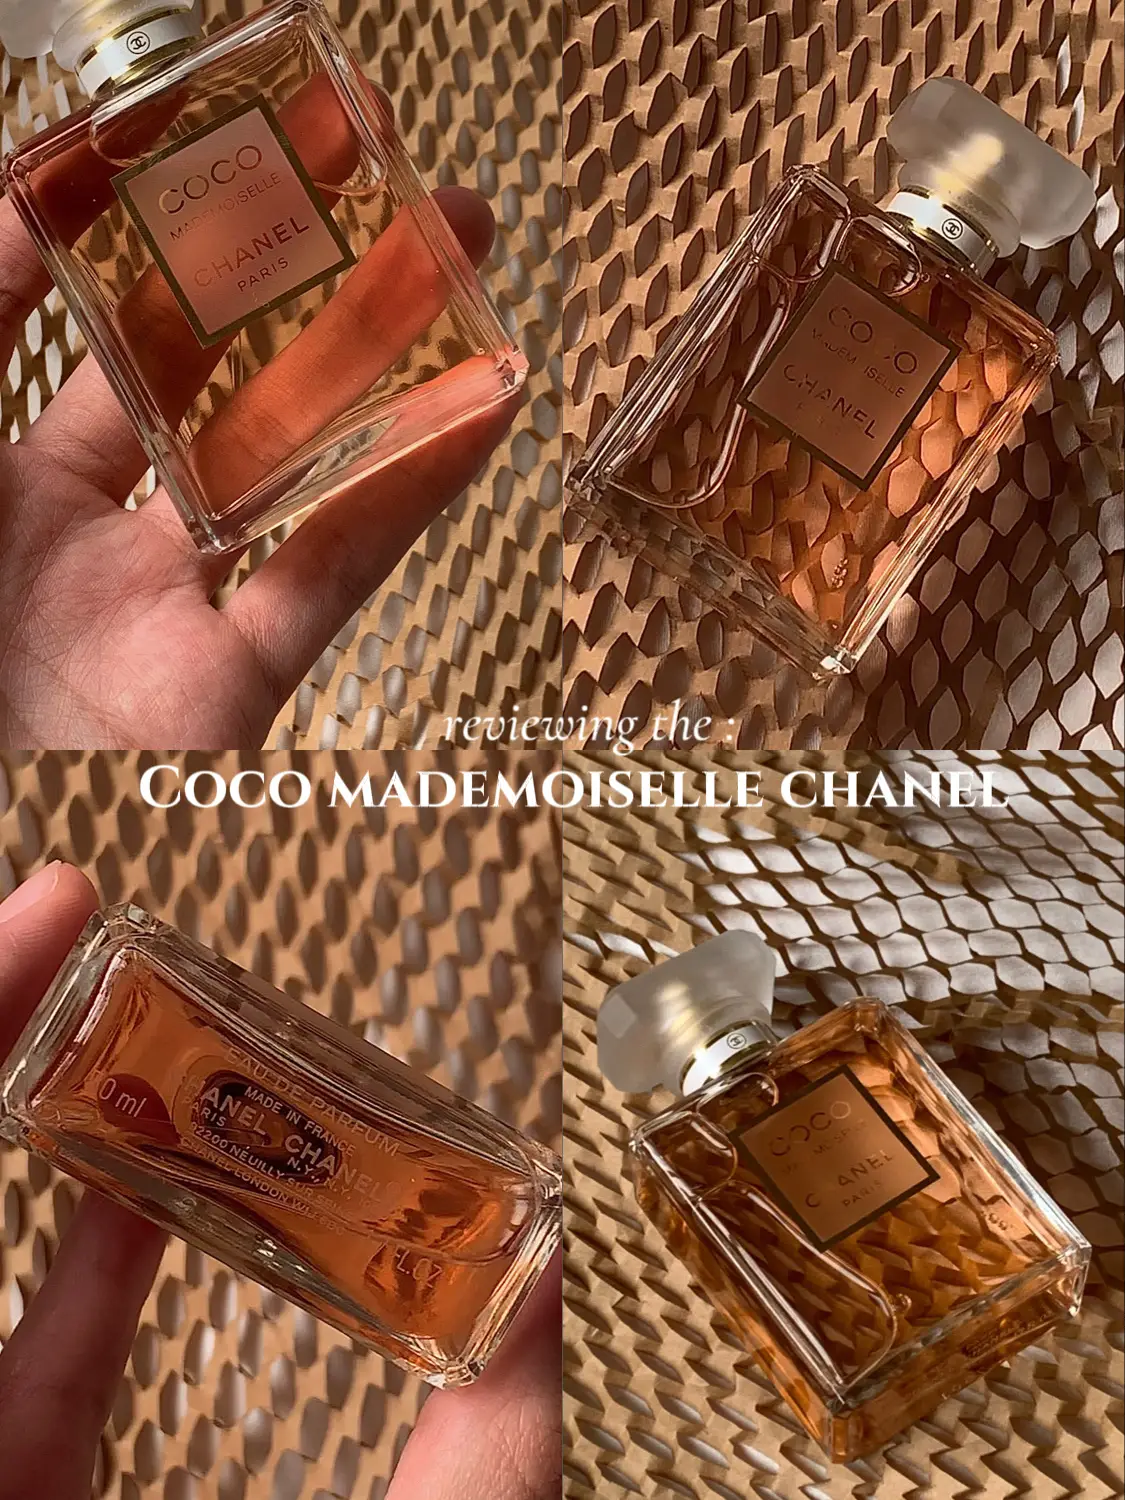 Louis Vuitton, Makeup, Louis Vuitton Les Sables Roses Perfume 0ml 34 Fl  Oz